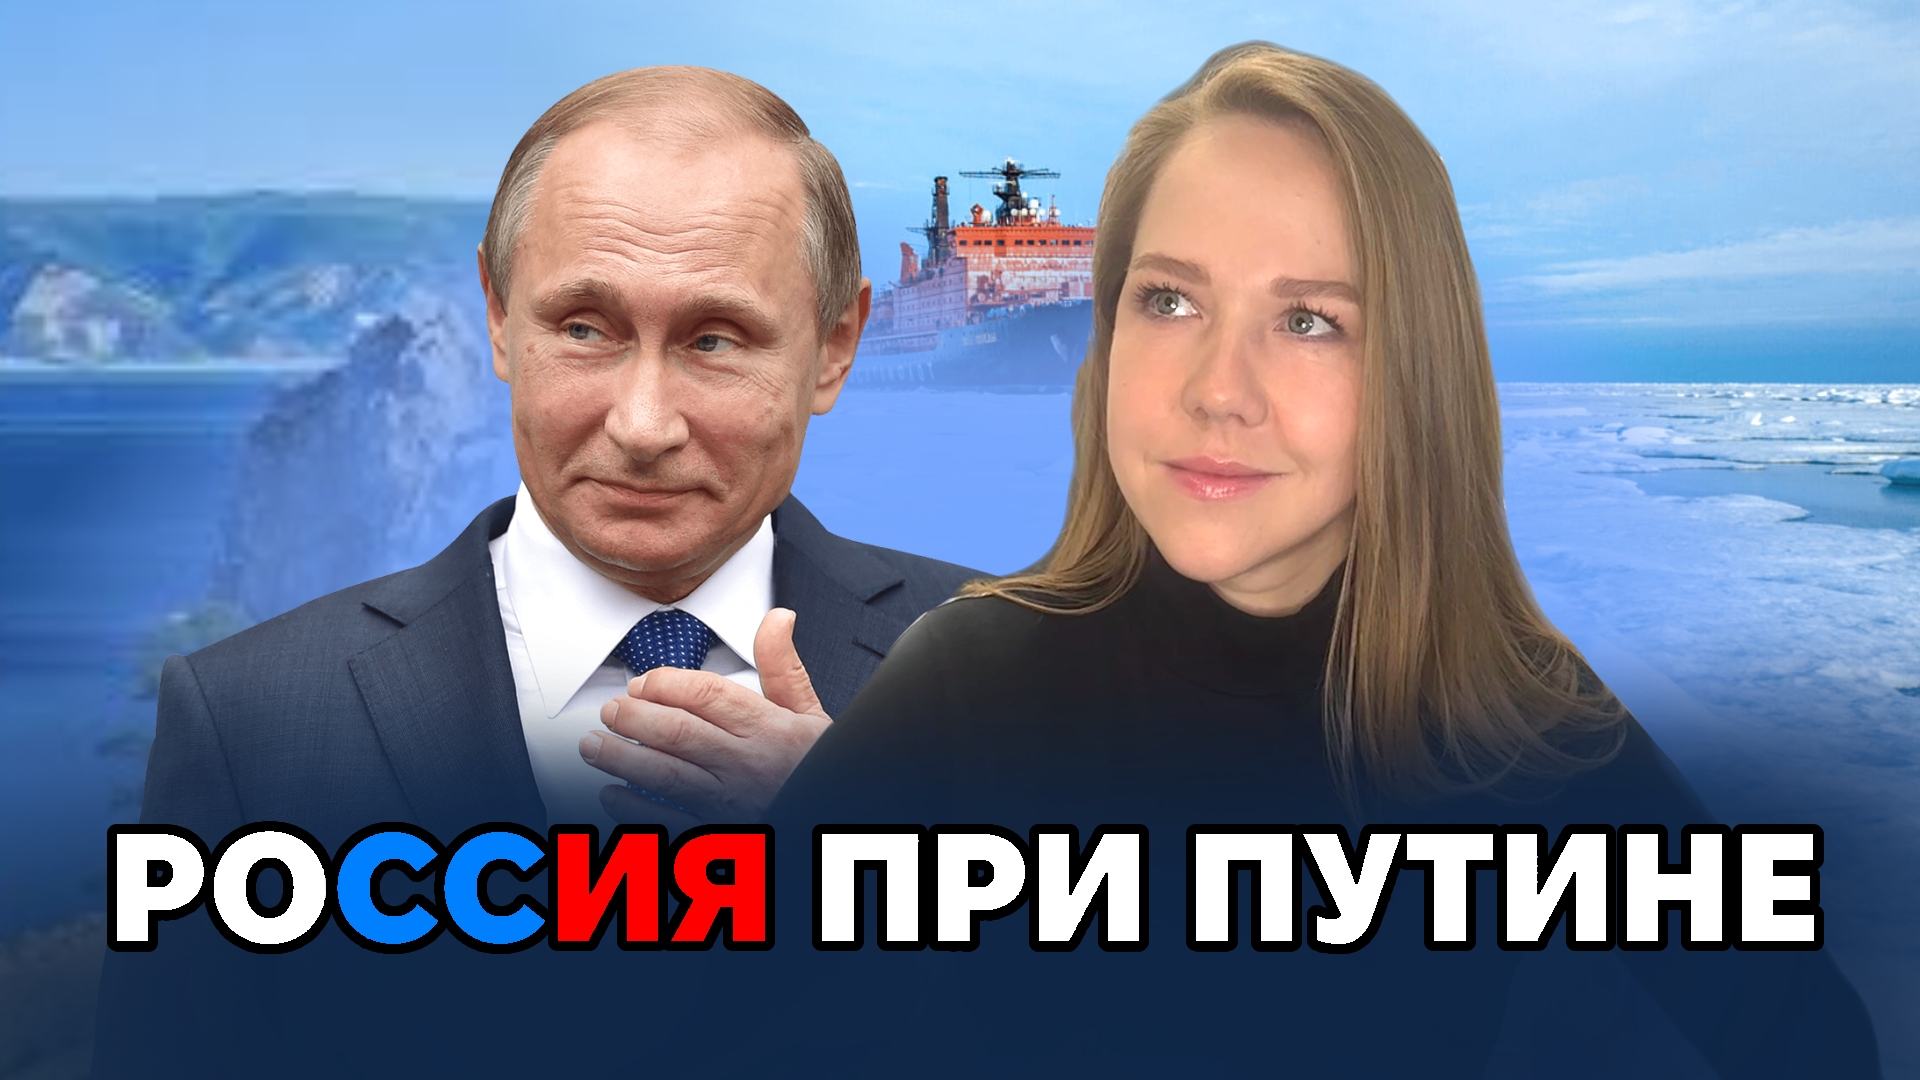 Путин дал недвусмысленный намек: Что изменилось в Путинской России?